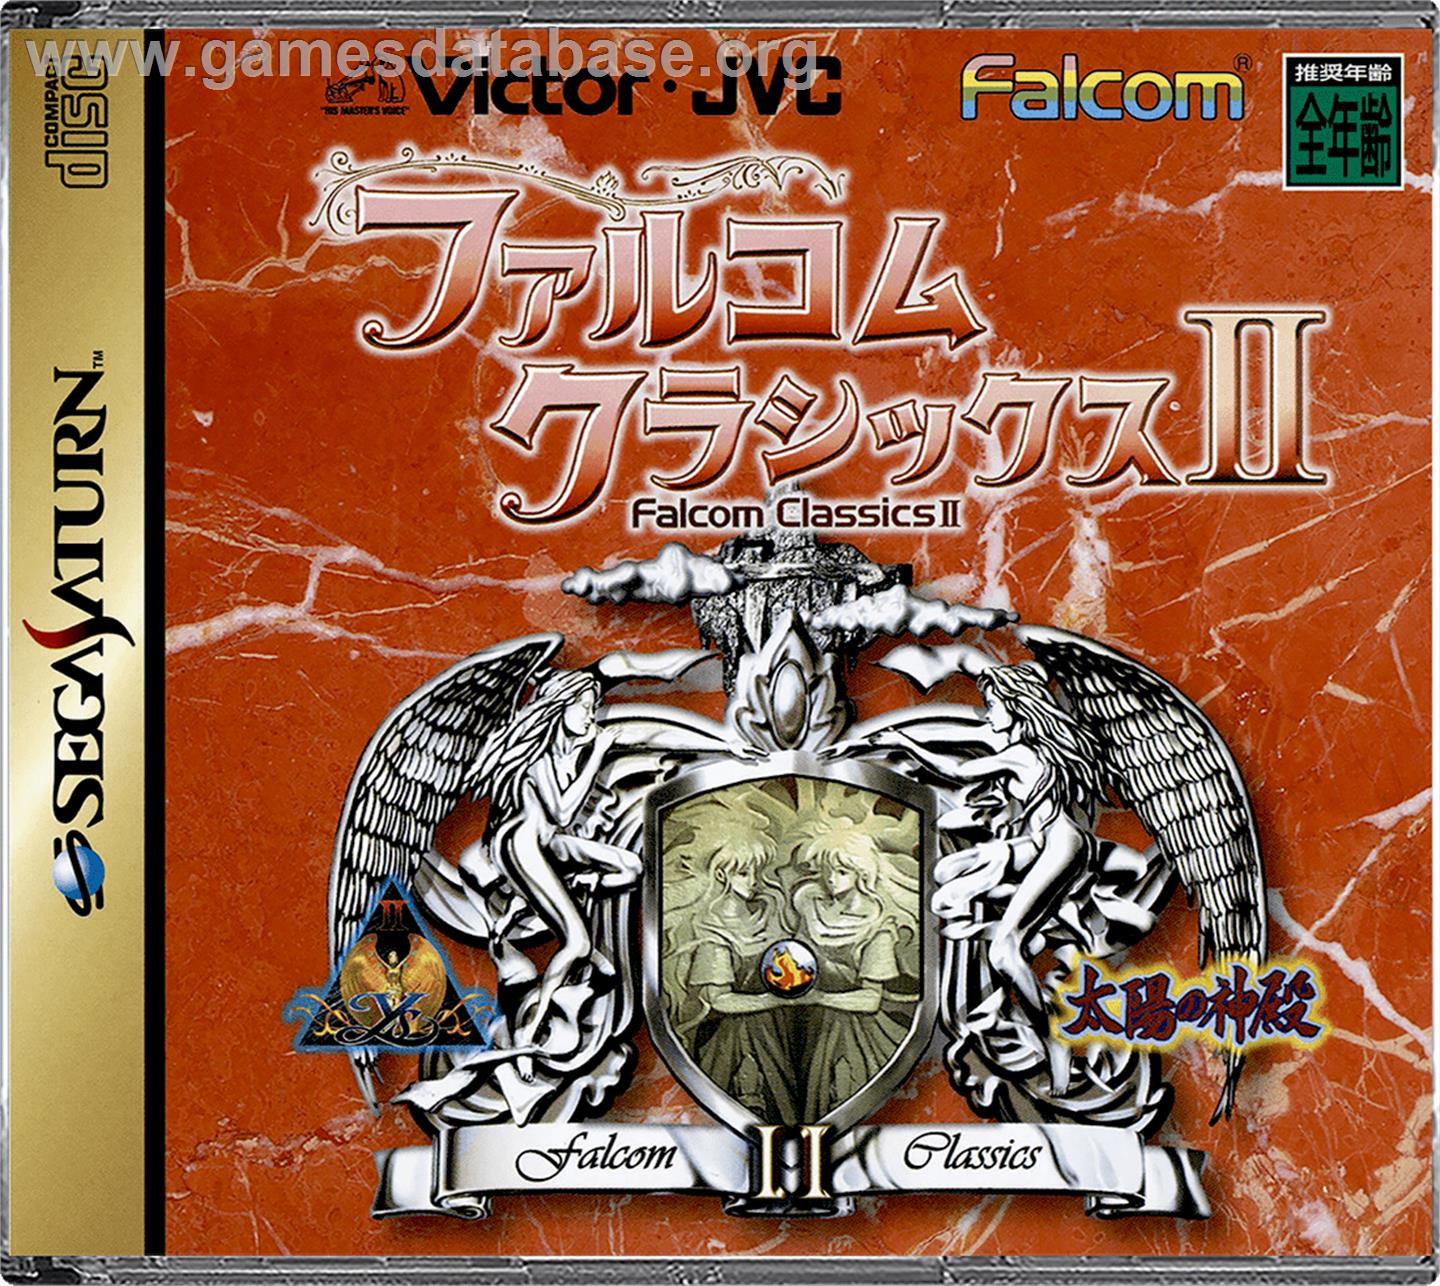 Falcom Classics 2 - Sega Saturn - Artwork - Box